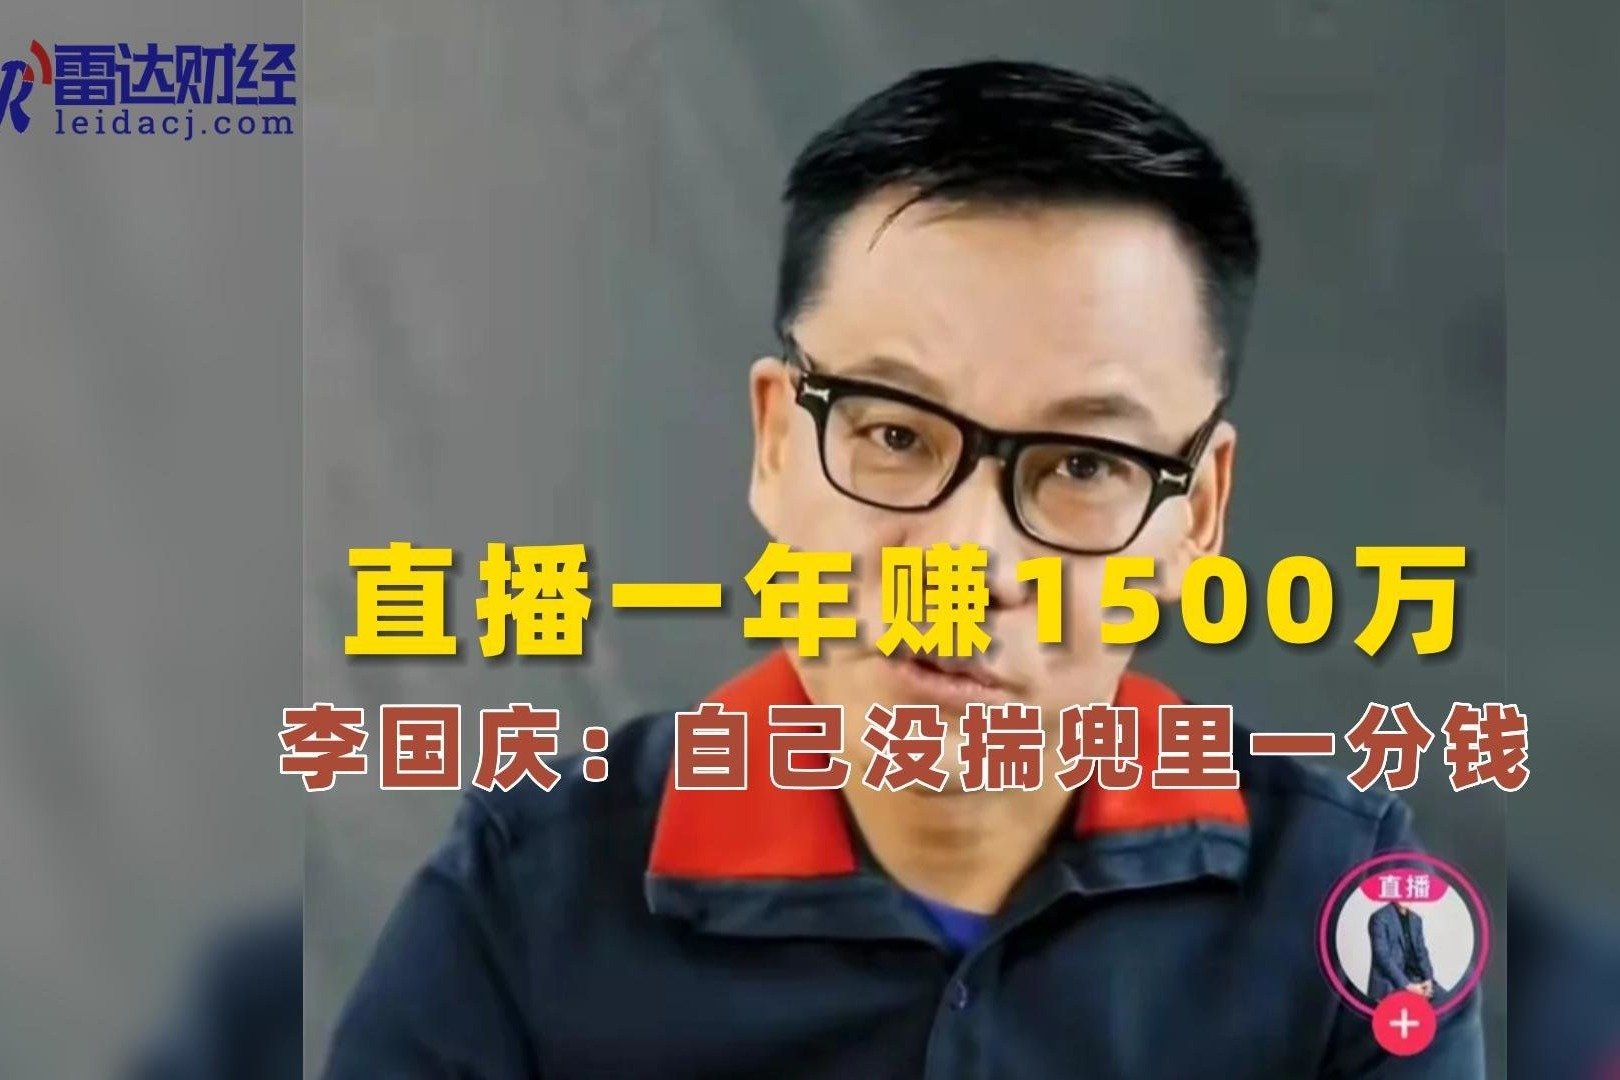 创始人李国庆、俞渝夫妻互撕 当当网20周年庆喜上添忧